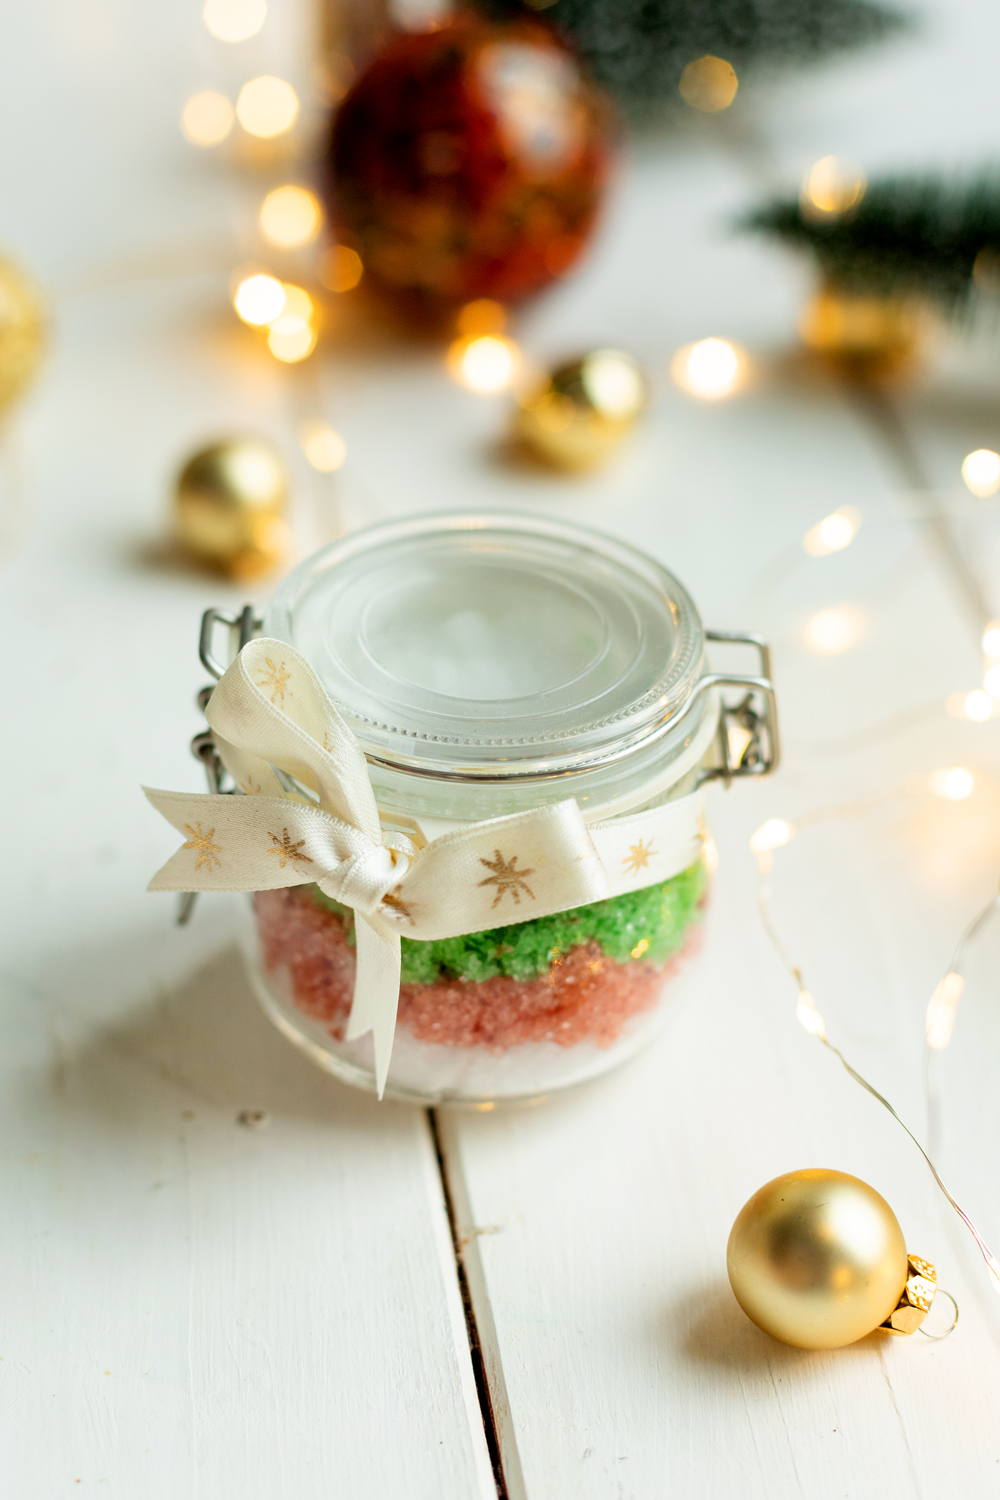 Weihnachtliches Sugar Scrub - Günstige und einfache Geschenkidee